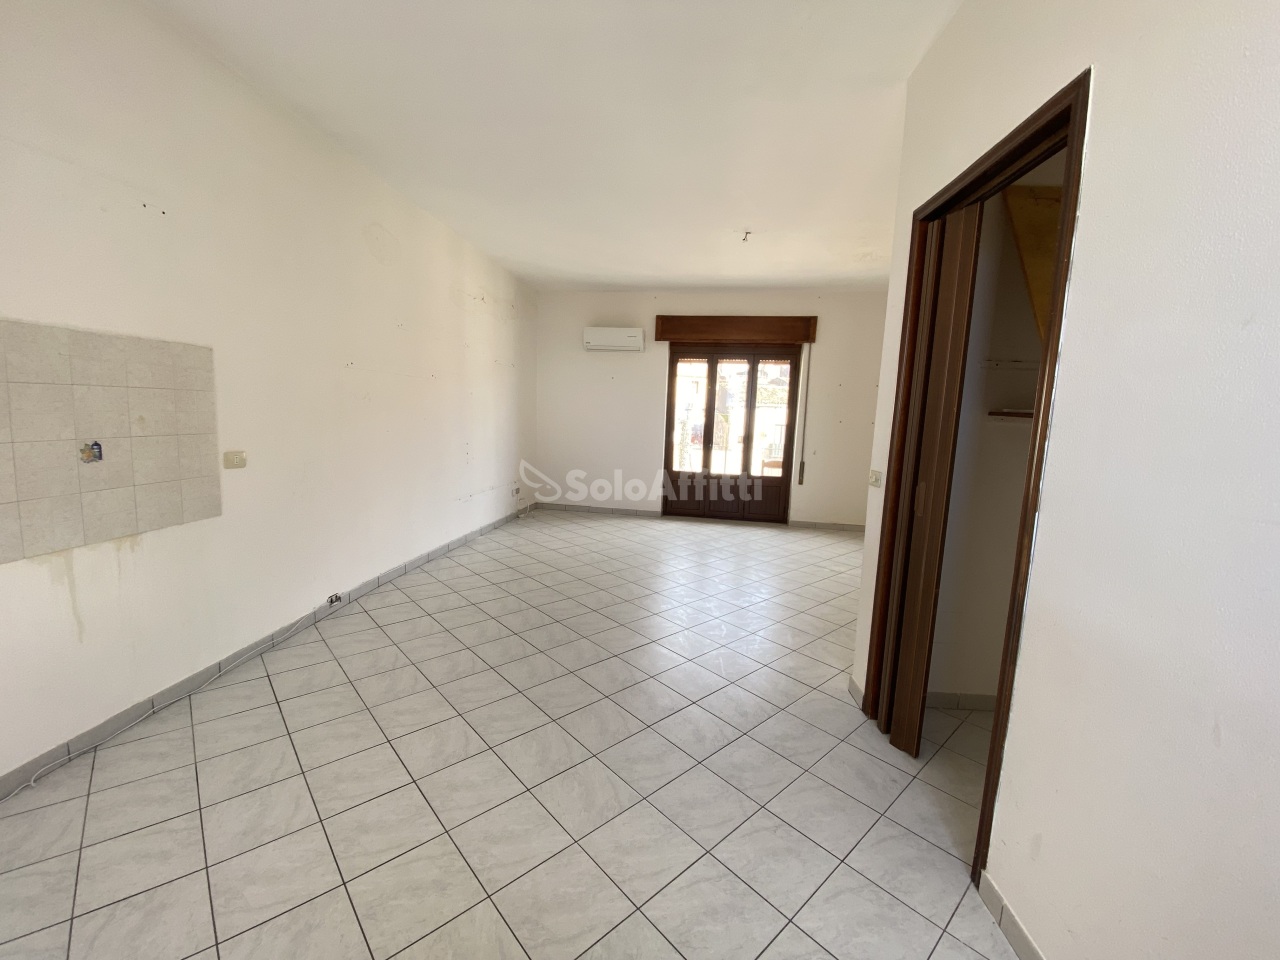 Appartamento in affitto a Sciacca, 6 locali, prezzo € 370 | PortaleAgenzieImmobiliari.it